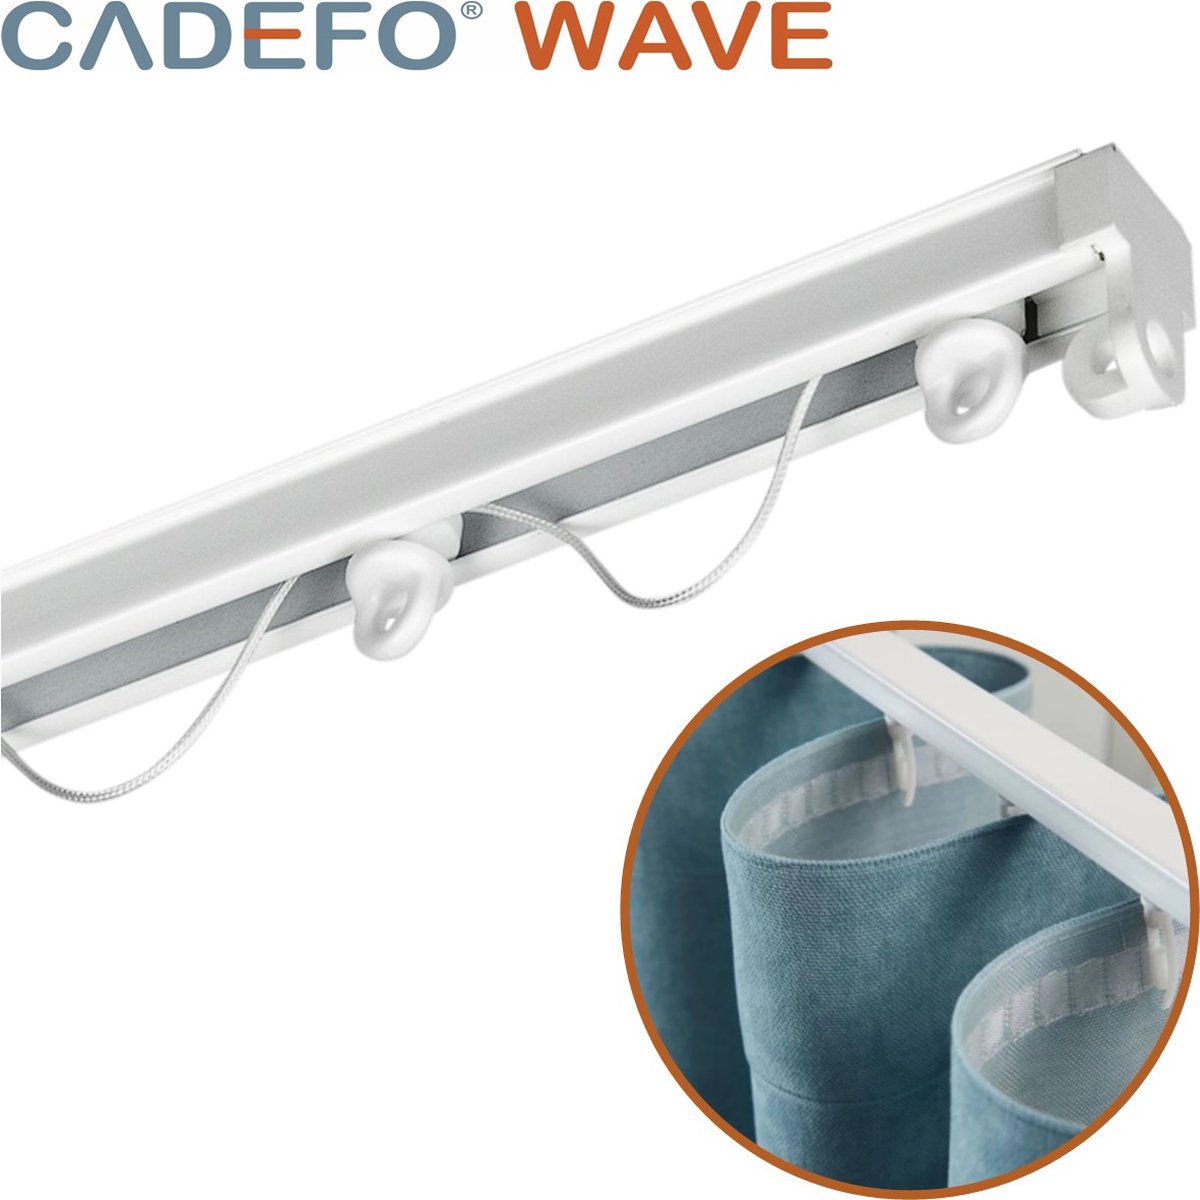 CADEFO WAVE (501 - 550 cm) Gordijnrails - Compleet op maat! - UIT 1 STUK - Leverbaar tot 6 meter - Plafondbevestiging - Lengte 506 cm